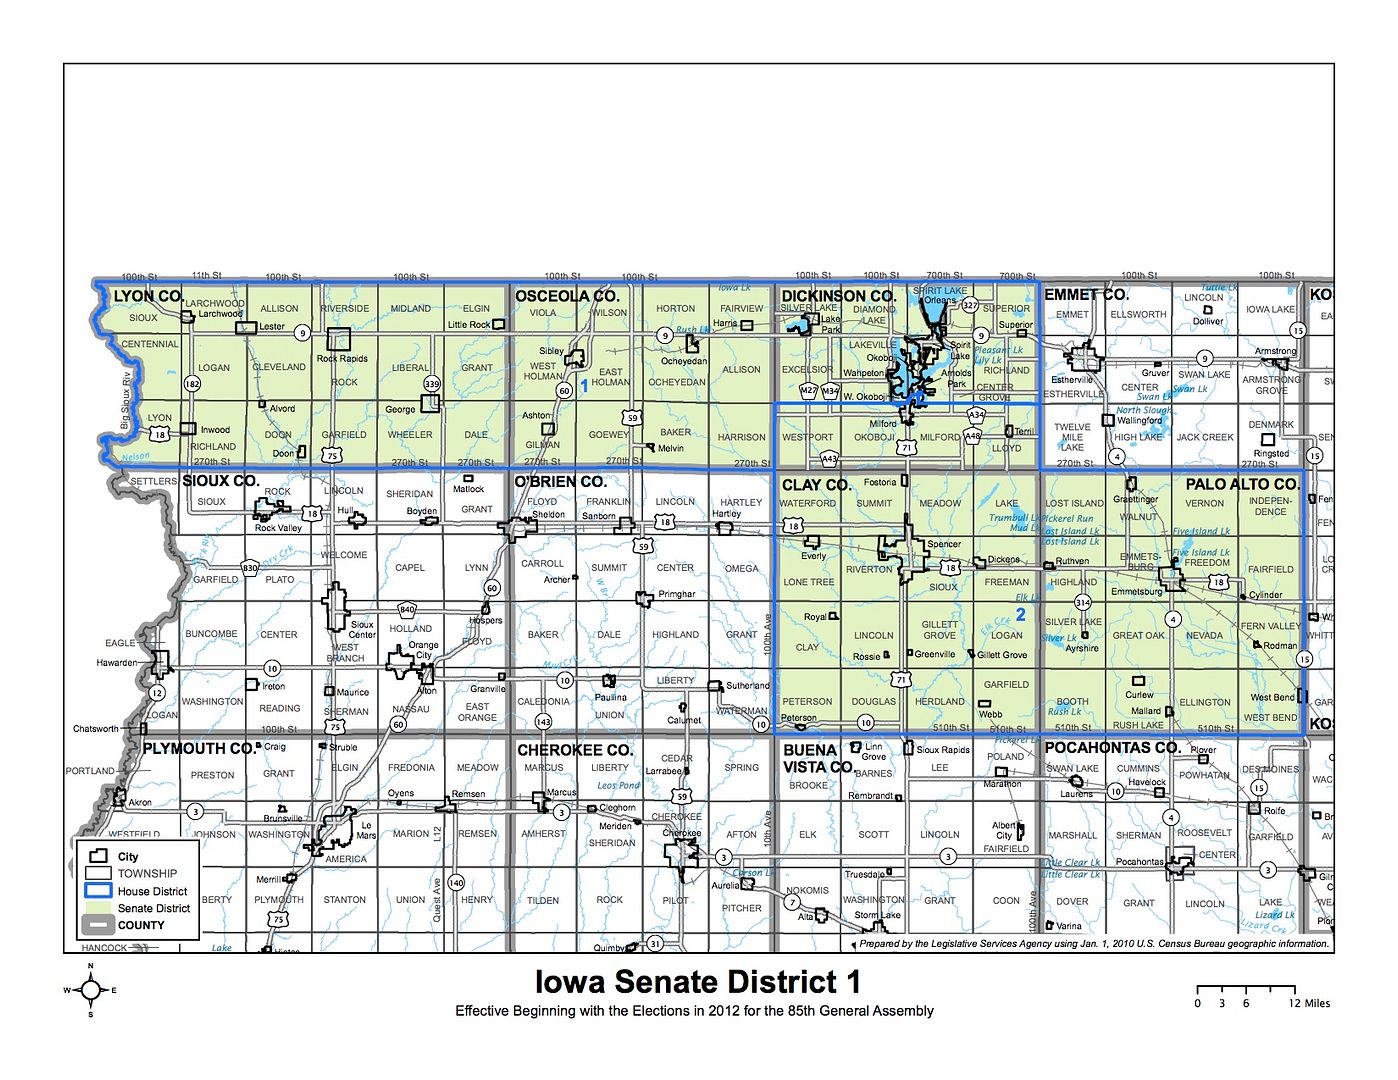 Iowa Senate district 1 photo IowaSD1_zpsan0vvlzp.jpg